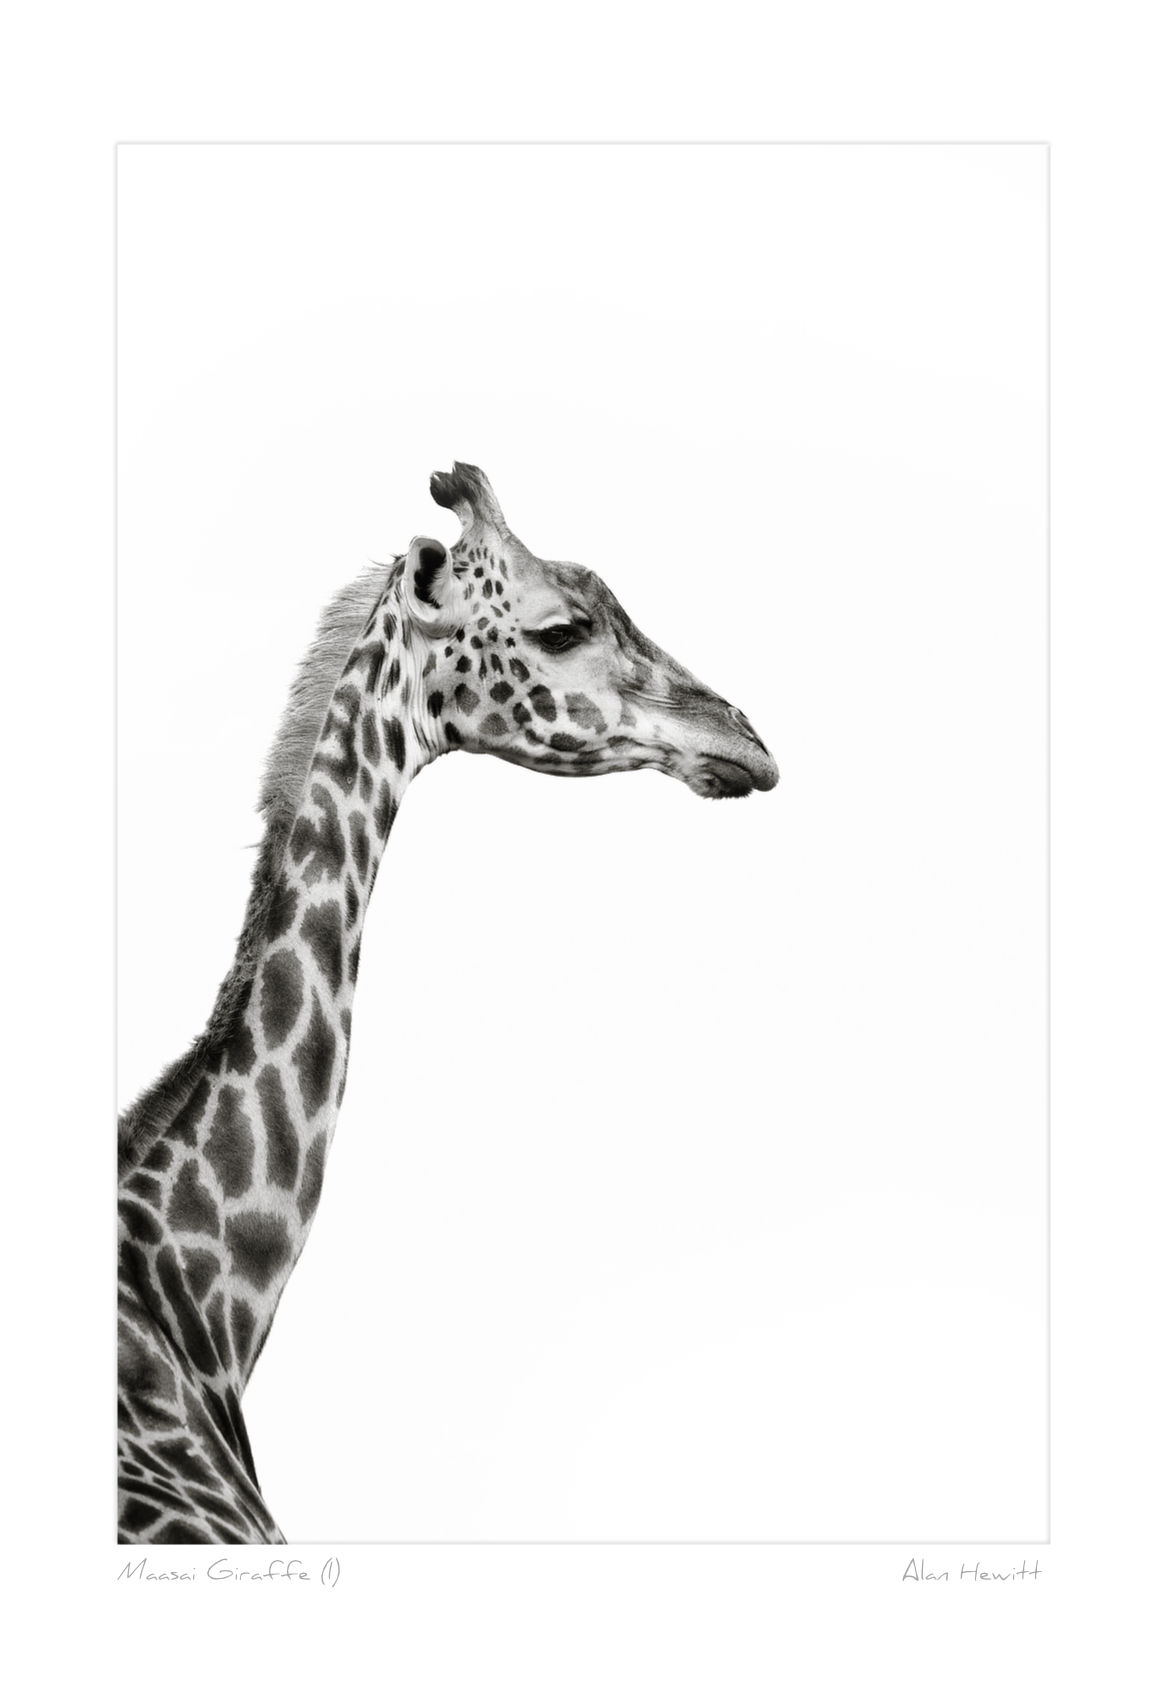 Maasai Giraffe (I)